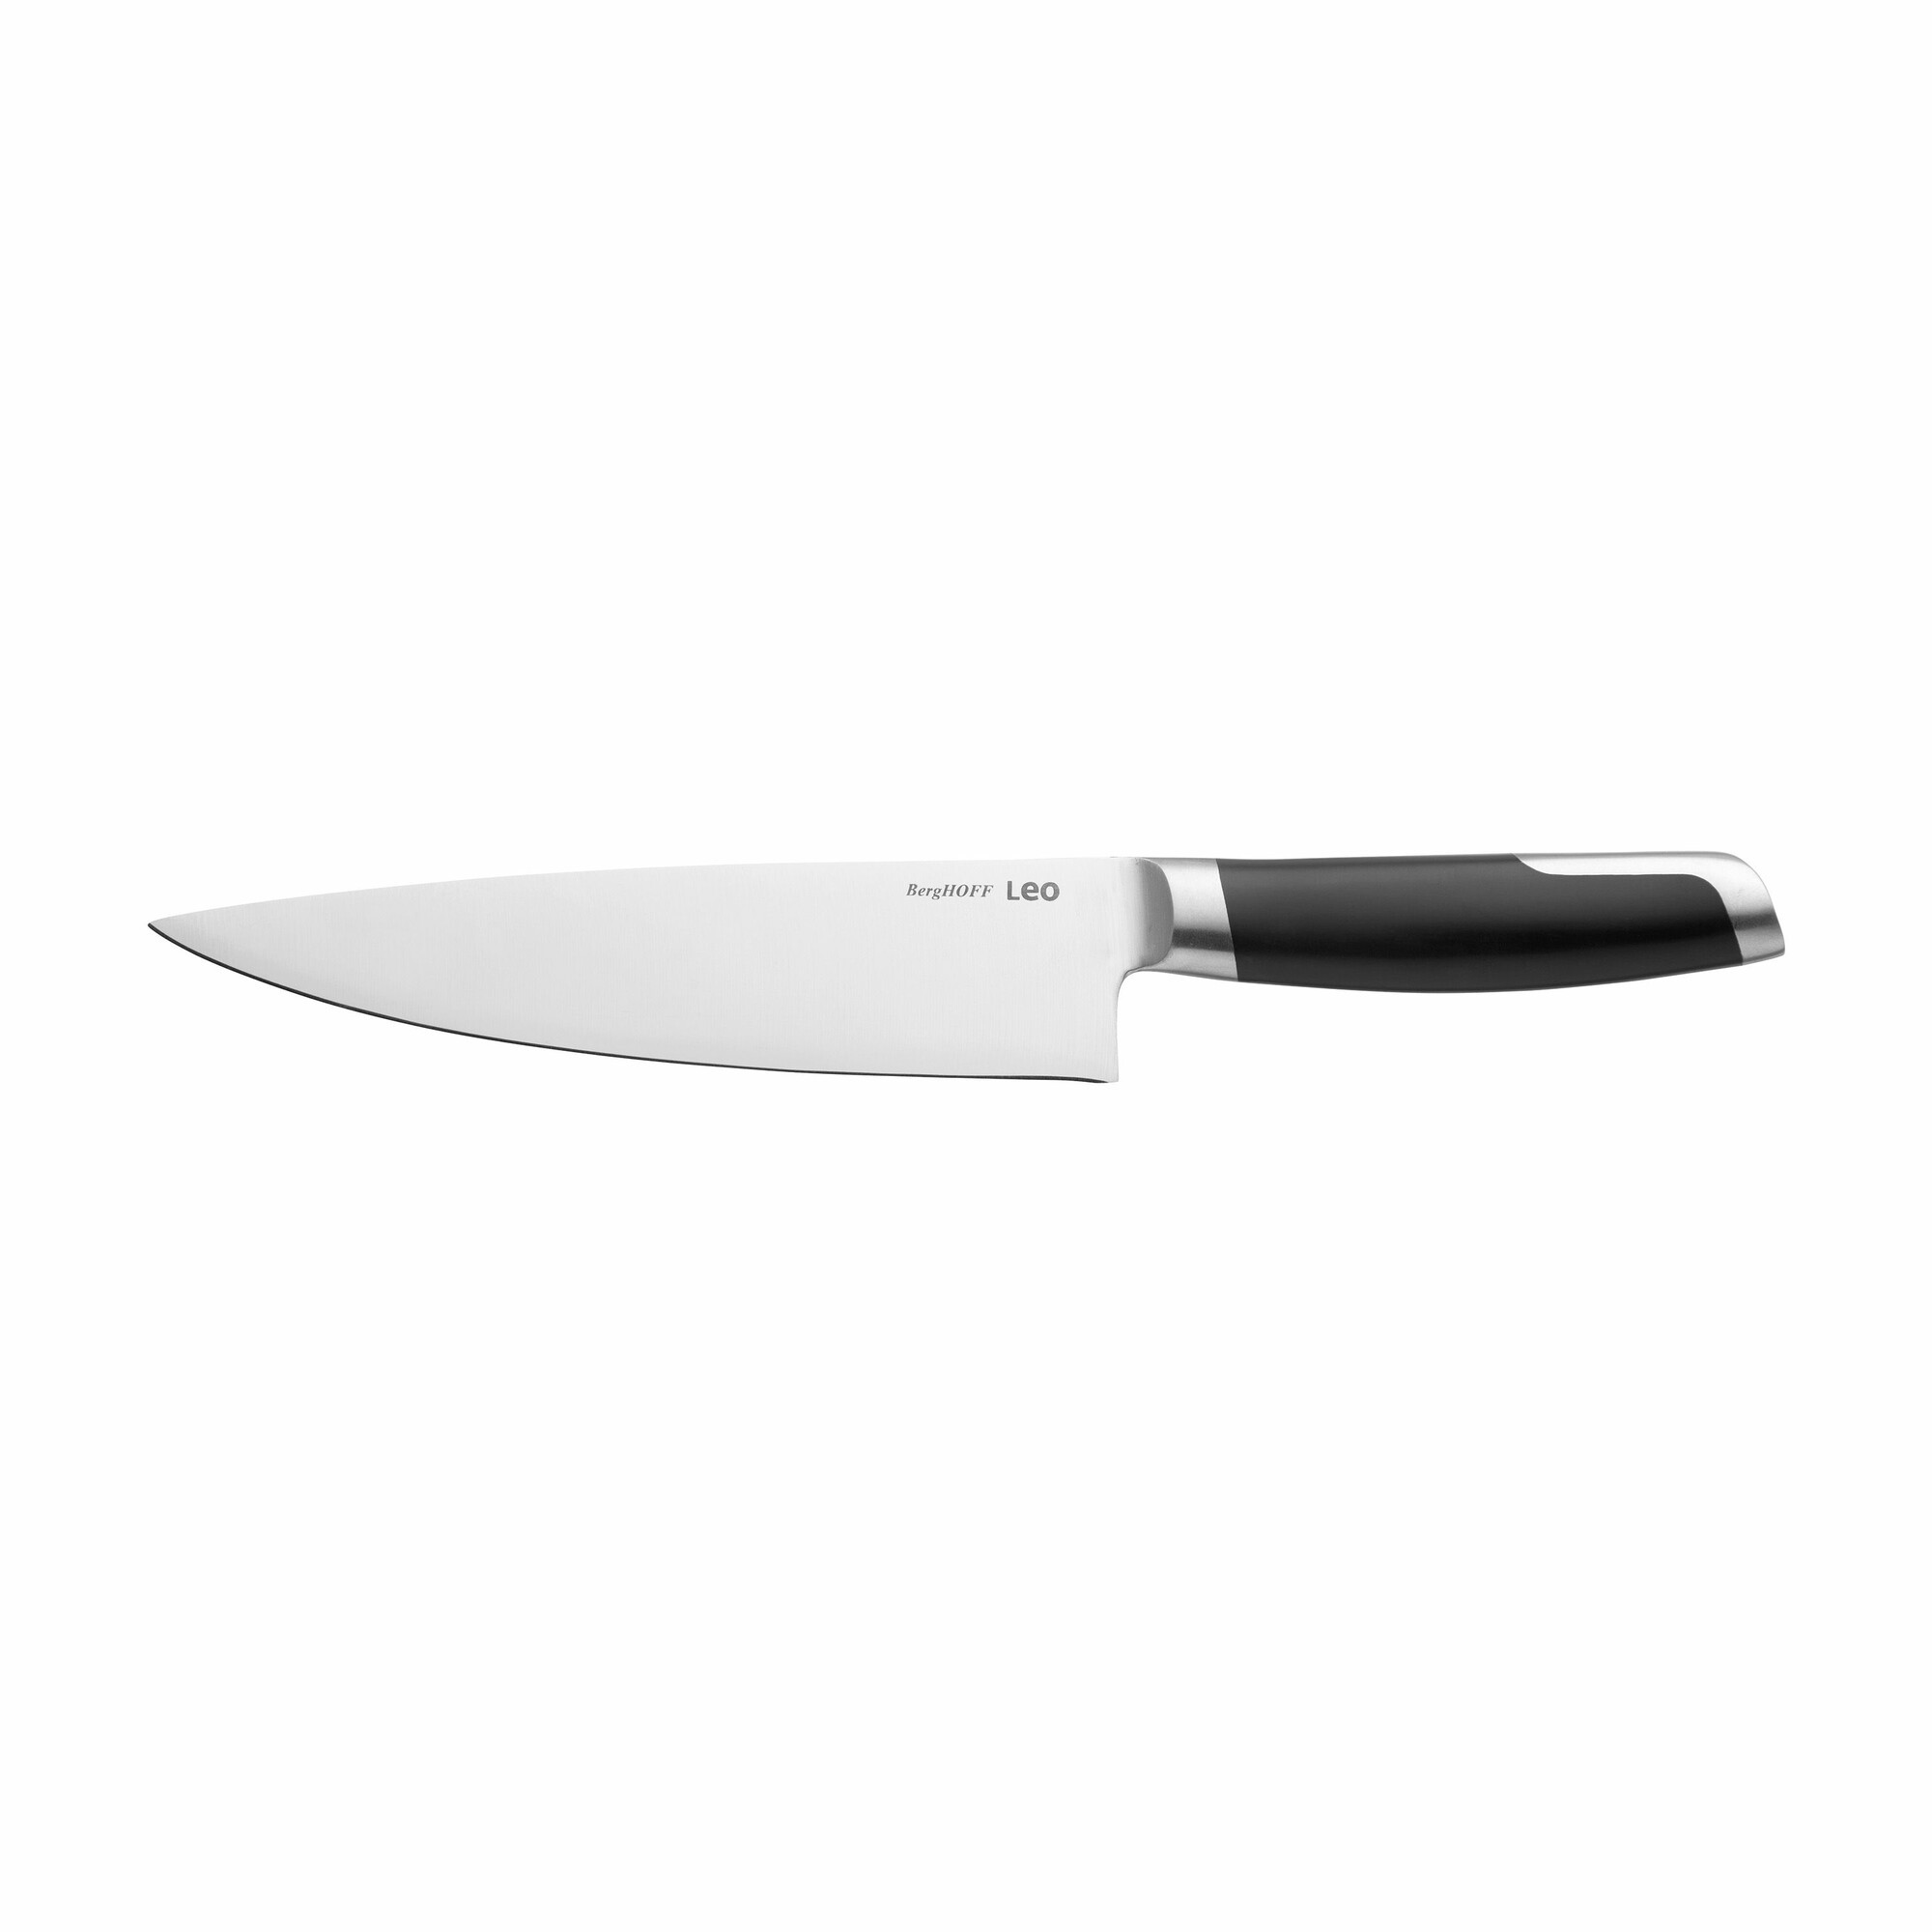 BergHOFF Essentials 6 in. Stainless Steel Santoku Knife